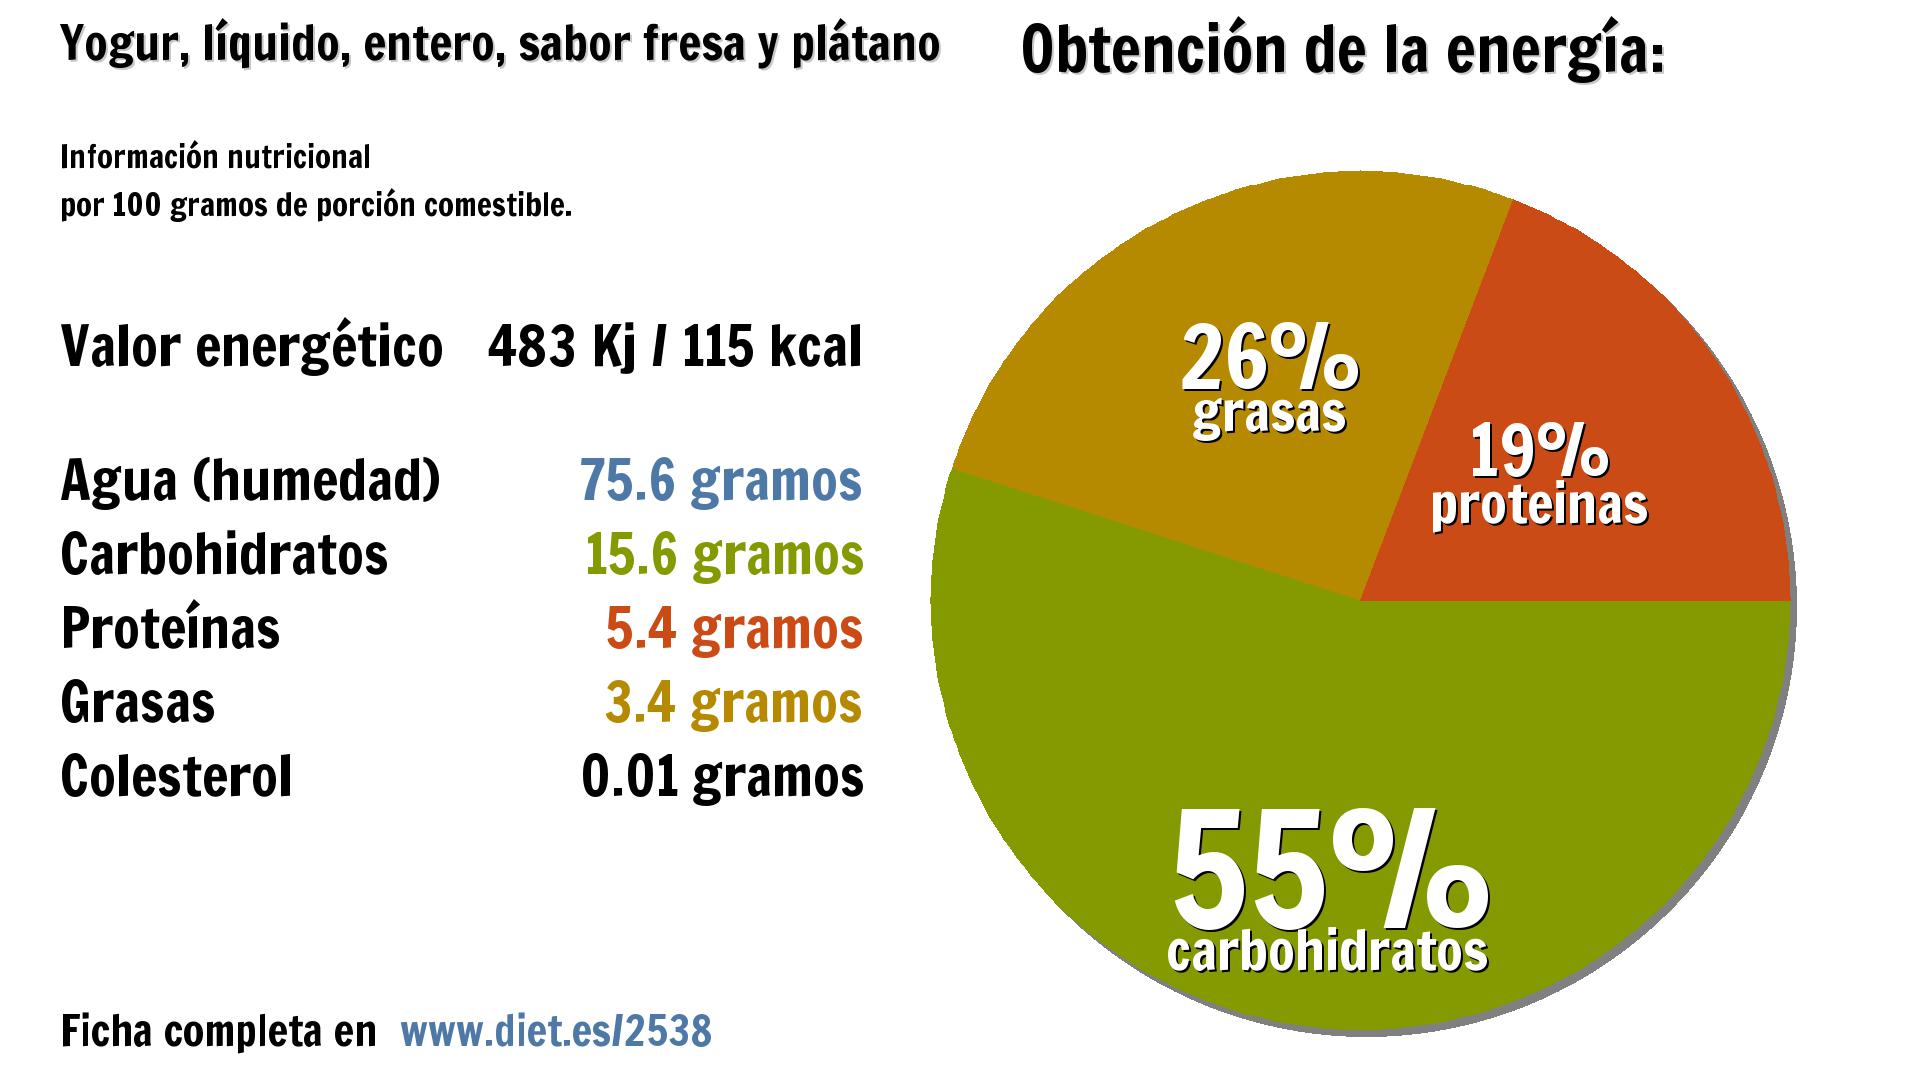 Yogur, líquido, entero, sabor fresa y plátano: energía 483 Kj, agua 76 g., carbohidratos 16 g., proteínas 5 g. y grasas 3 g.